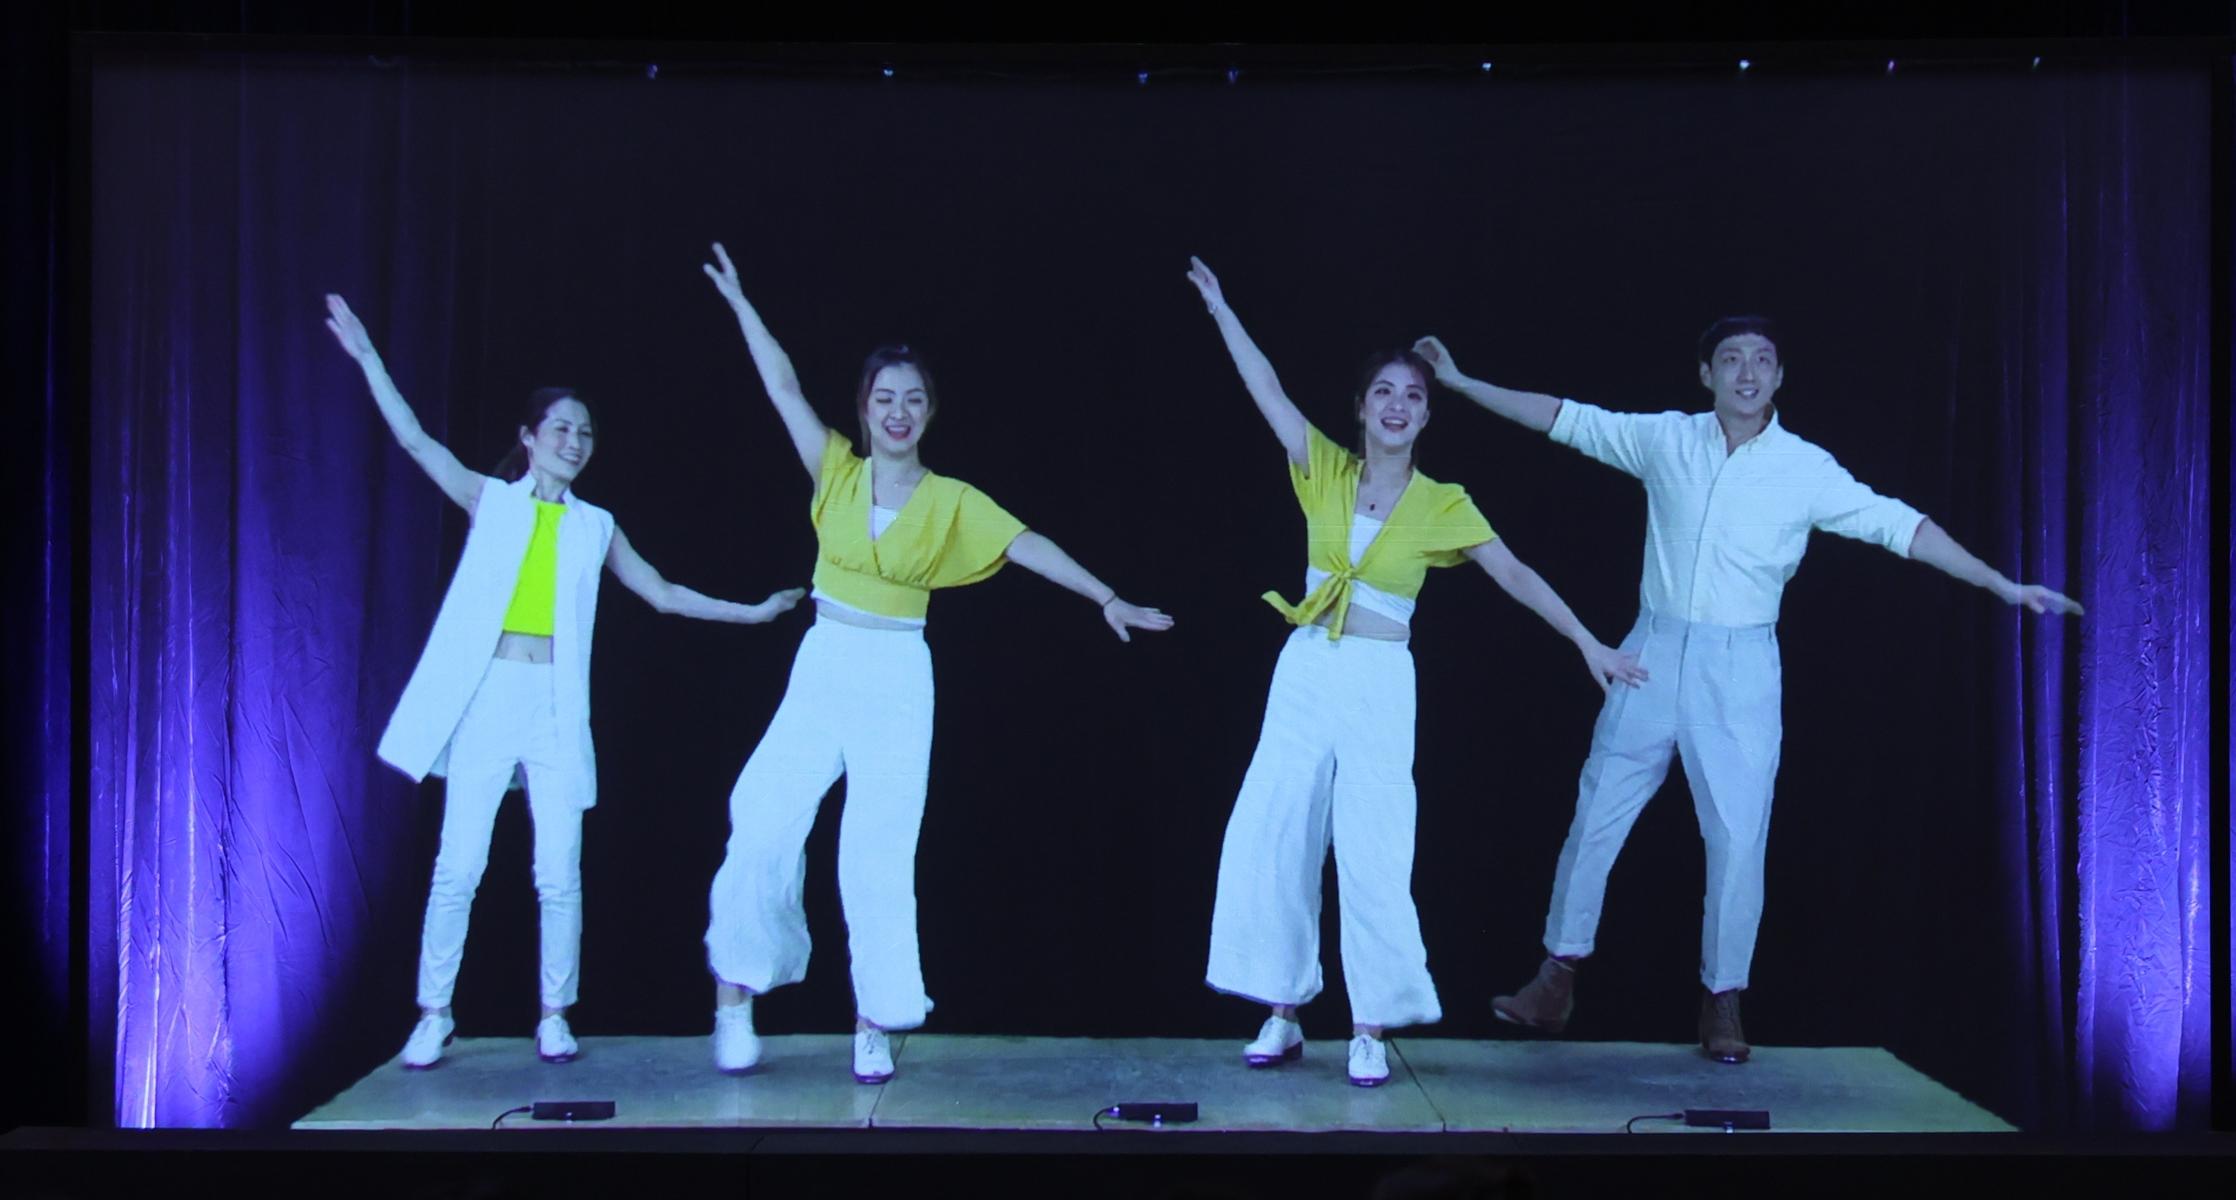 香港駐東京經濟貿易辦事處今日（九月二十二日）於韓國首爾舉行晚宴，慶祝香港特別行政區成立25周年。舞團R&T（Rhythm & Tempo）通過全息投影技術在香港為晚宴現場呈獻踢躂舞表演。